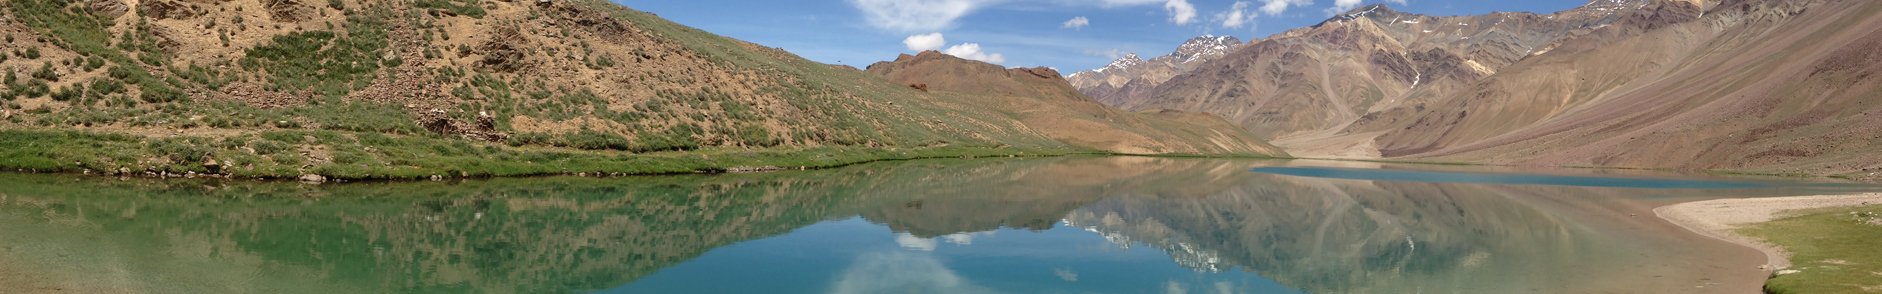 Rewalsar Lake Himachal Pradesh